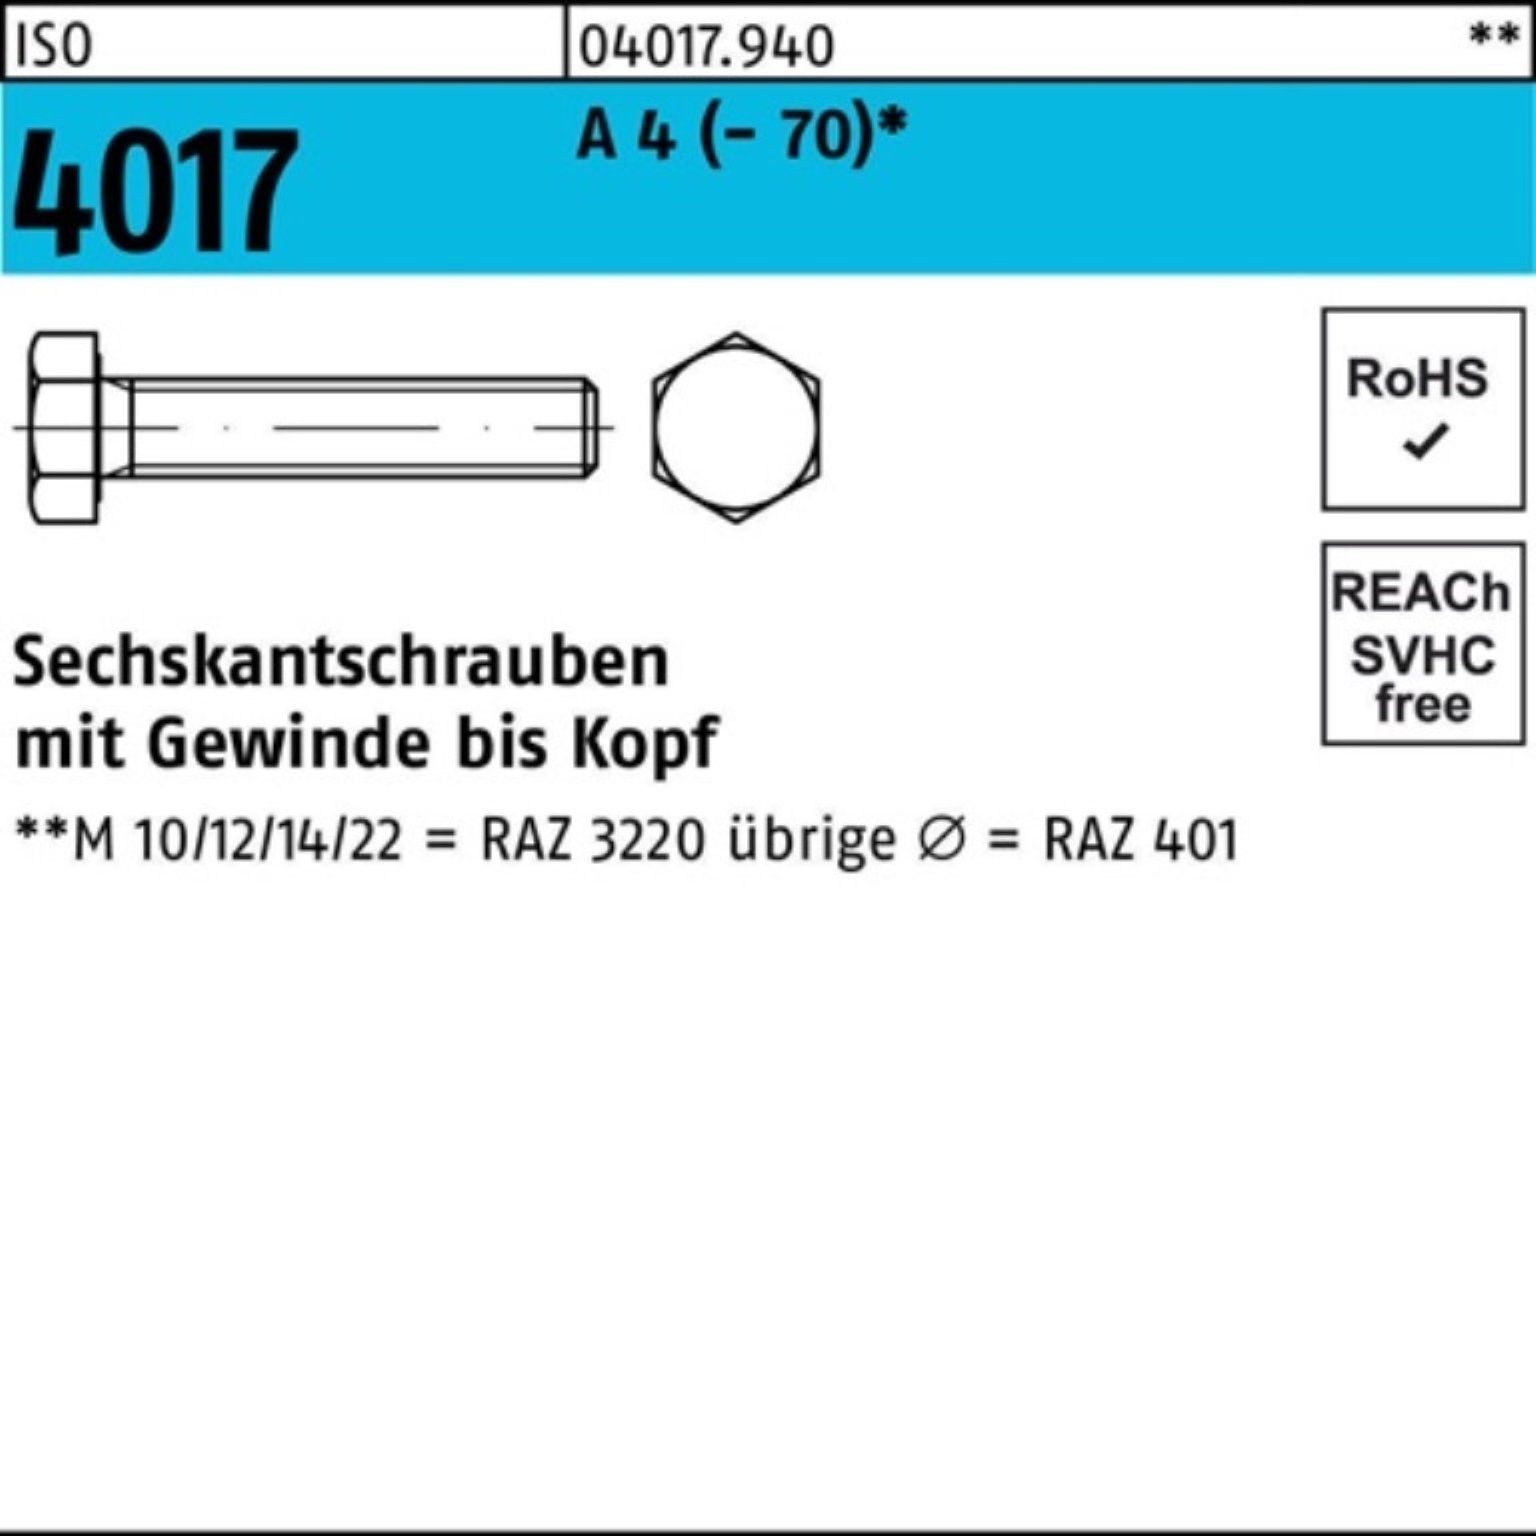 Bufab Sechskantschraube 100er Pack Sechskantschraube ISO 4017 VG M20x 40 A 4 (70) 25 Stück